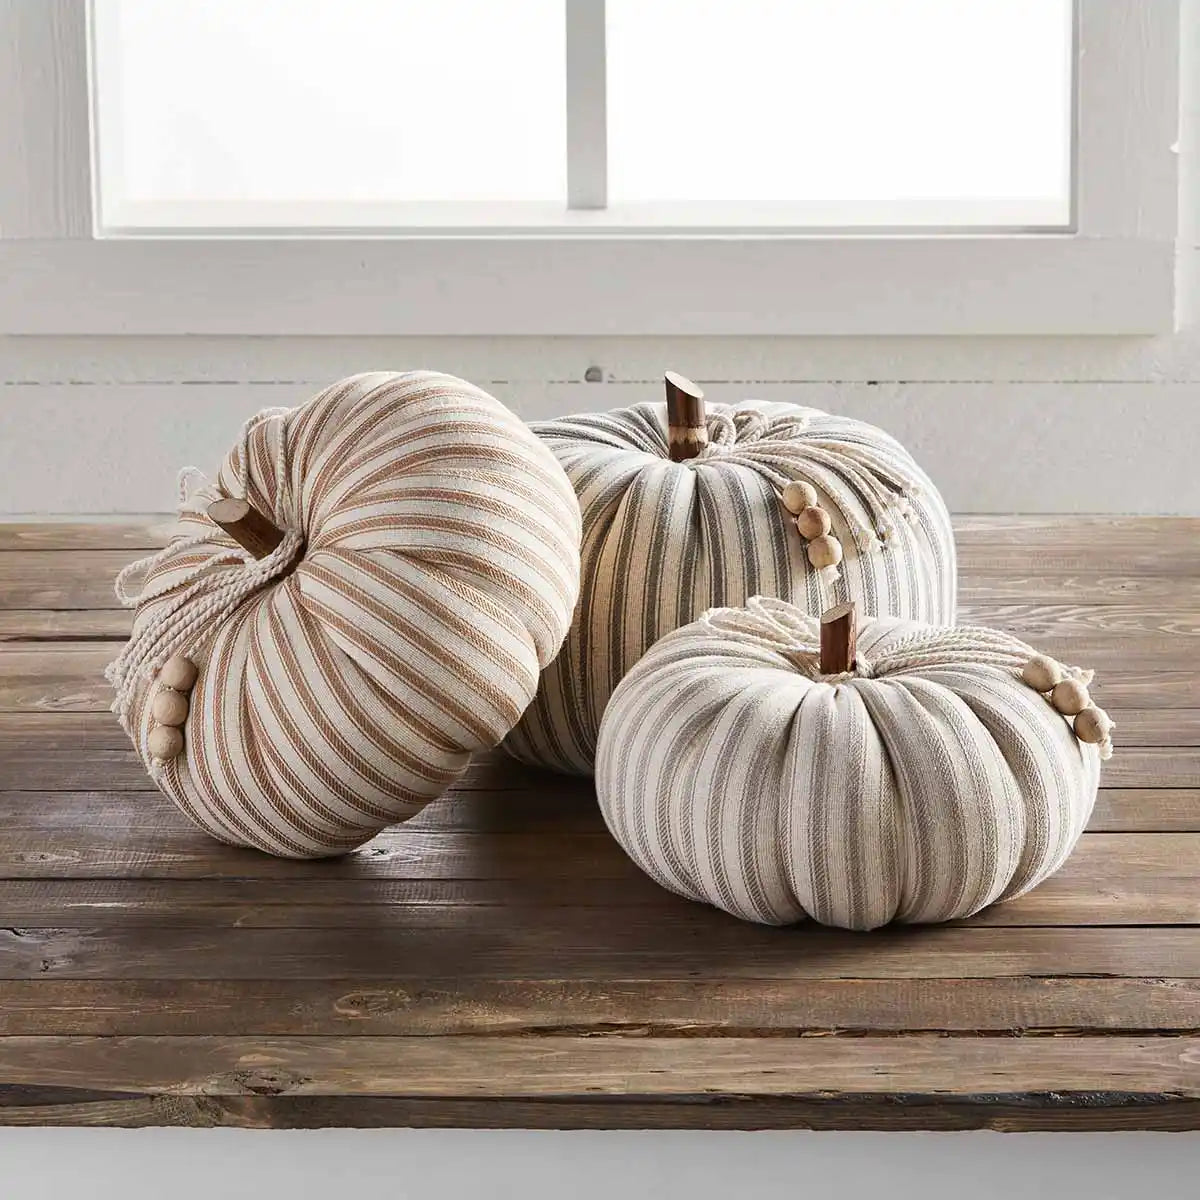 Unique Fall Decorative Pumpkins